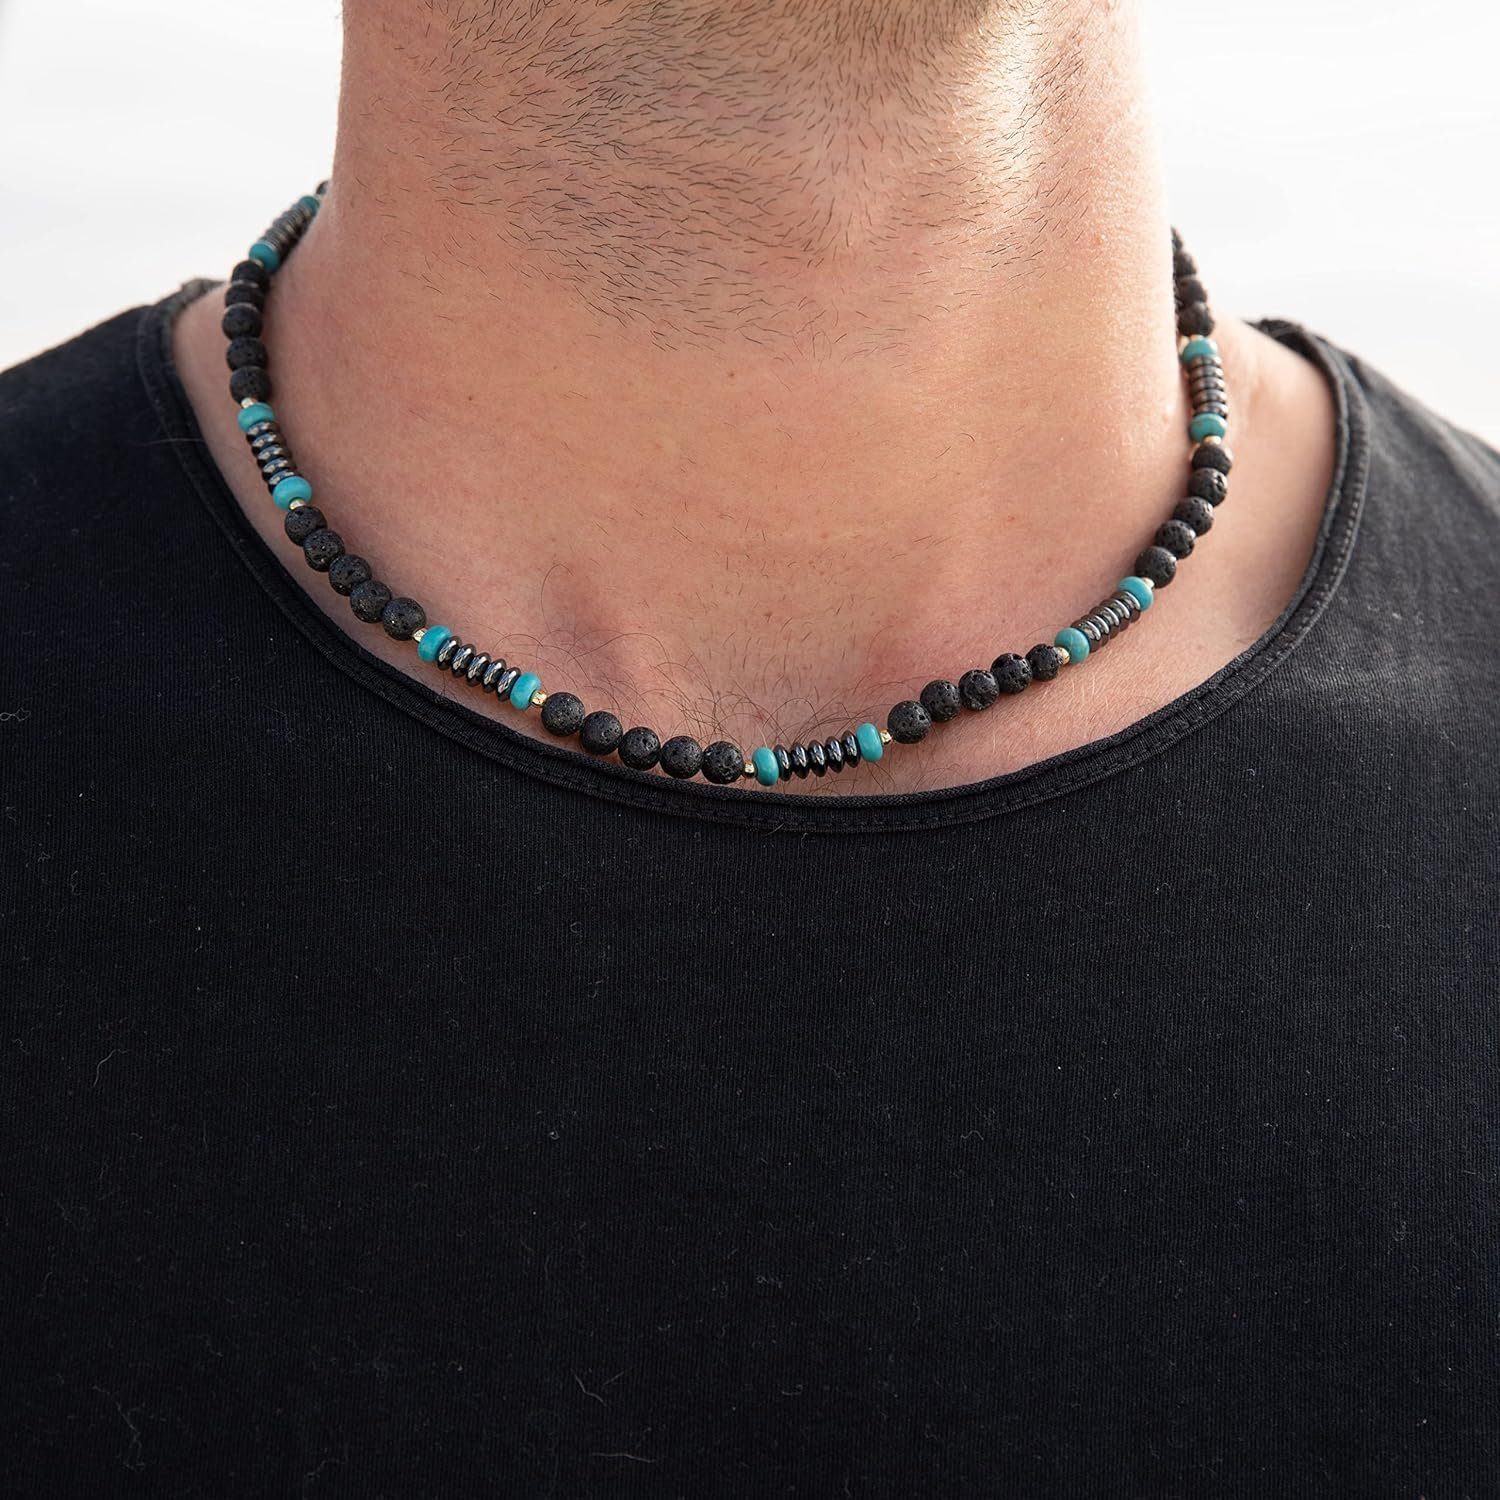 Made by Nami Perlenkette Surfer Halskette mit Kokosnussperlen, Herren Strand Schmuck Wasserfest